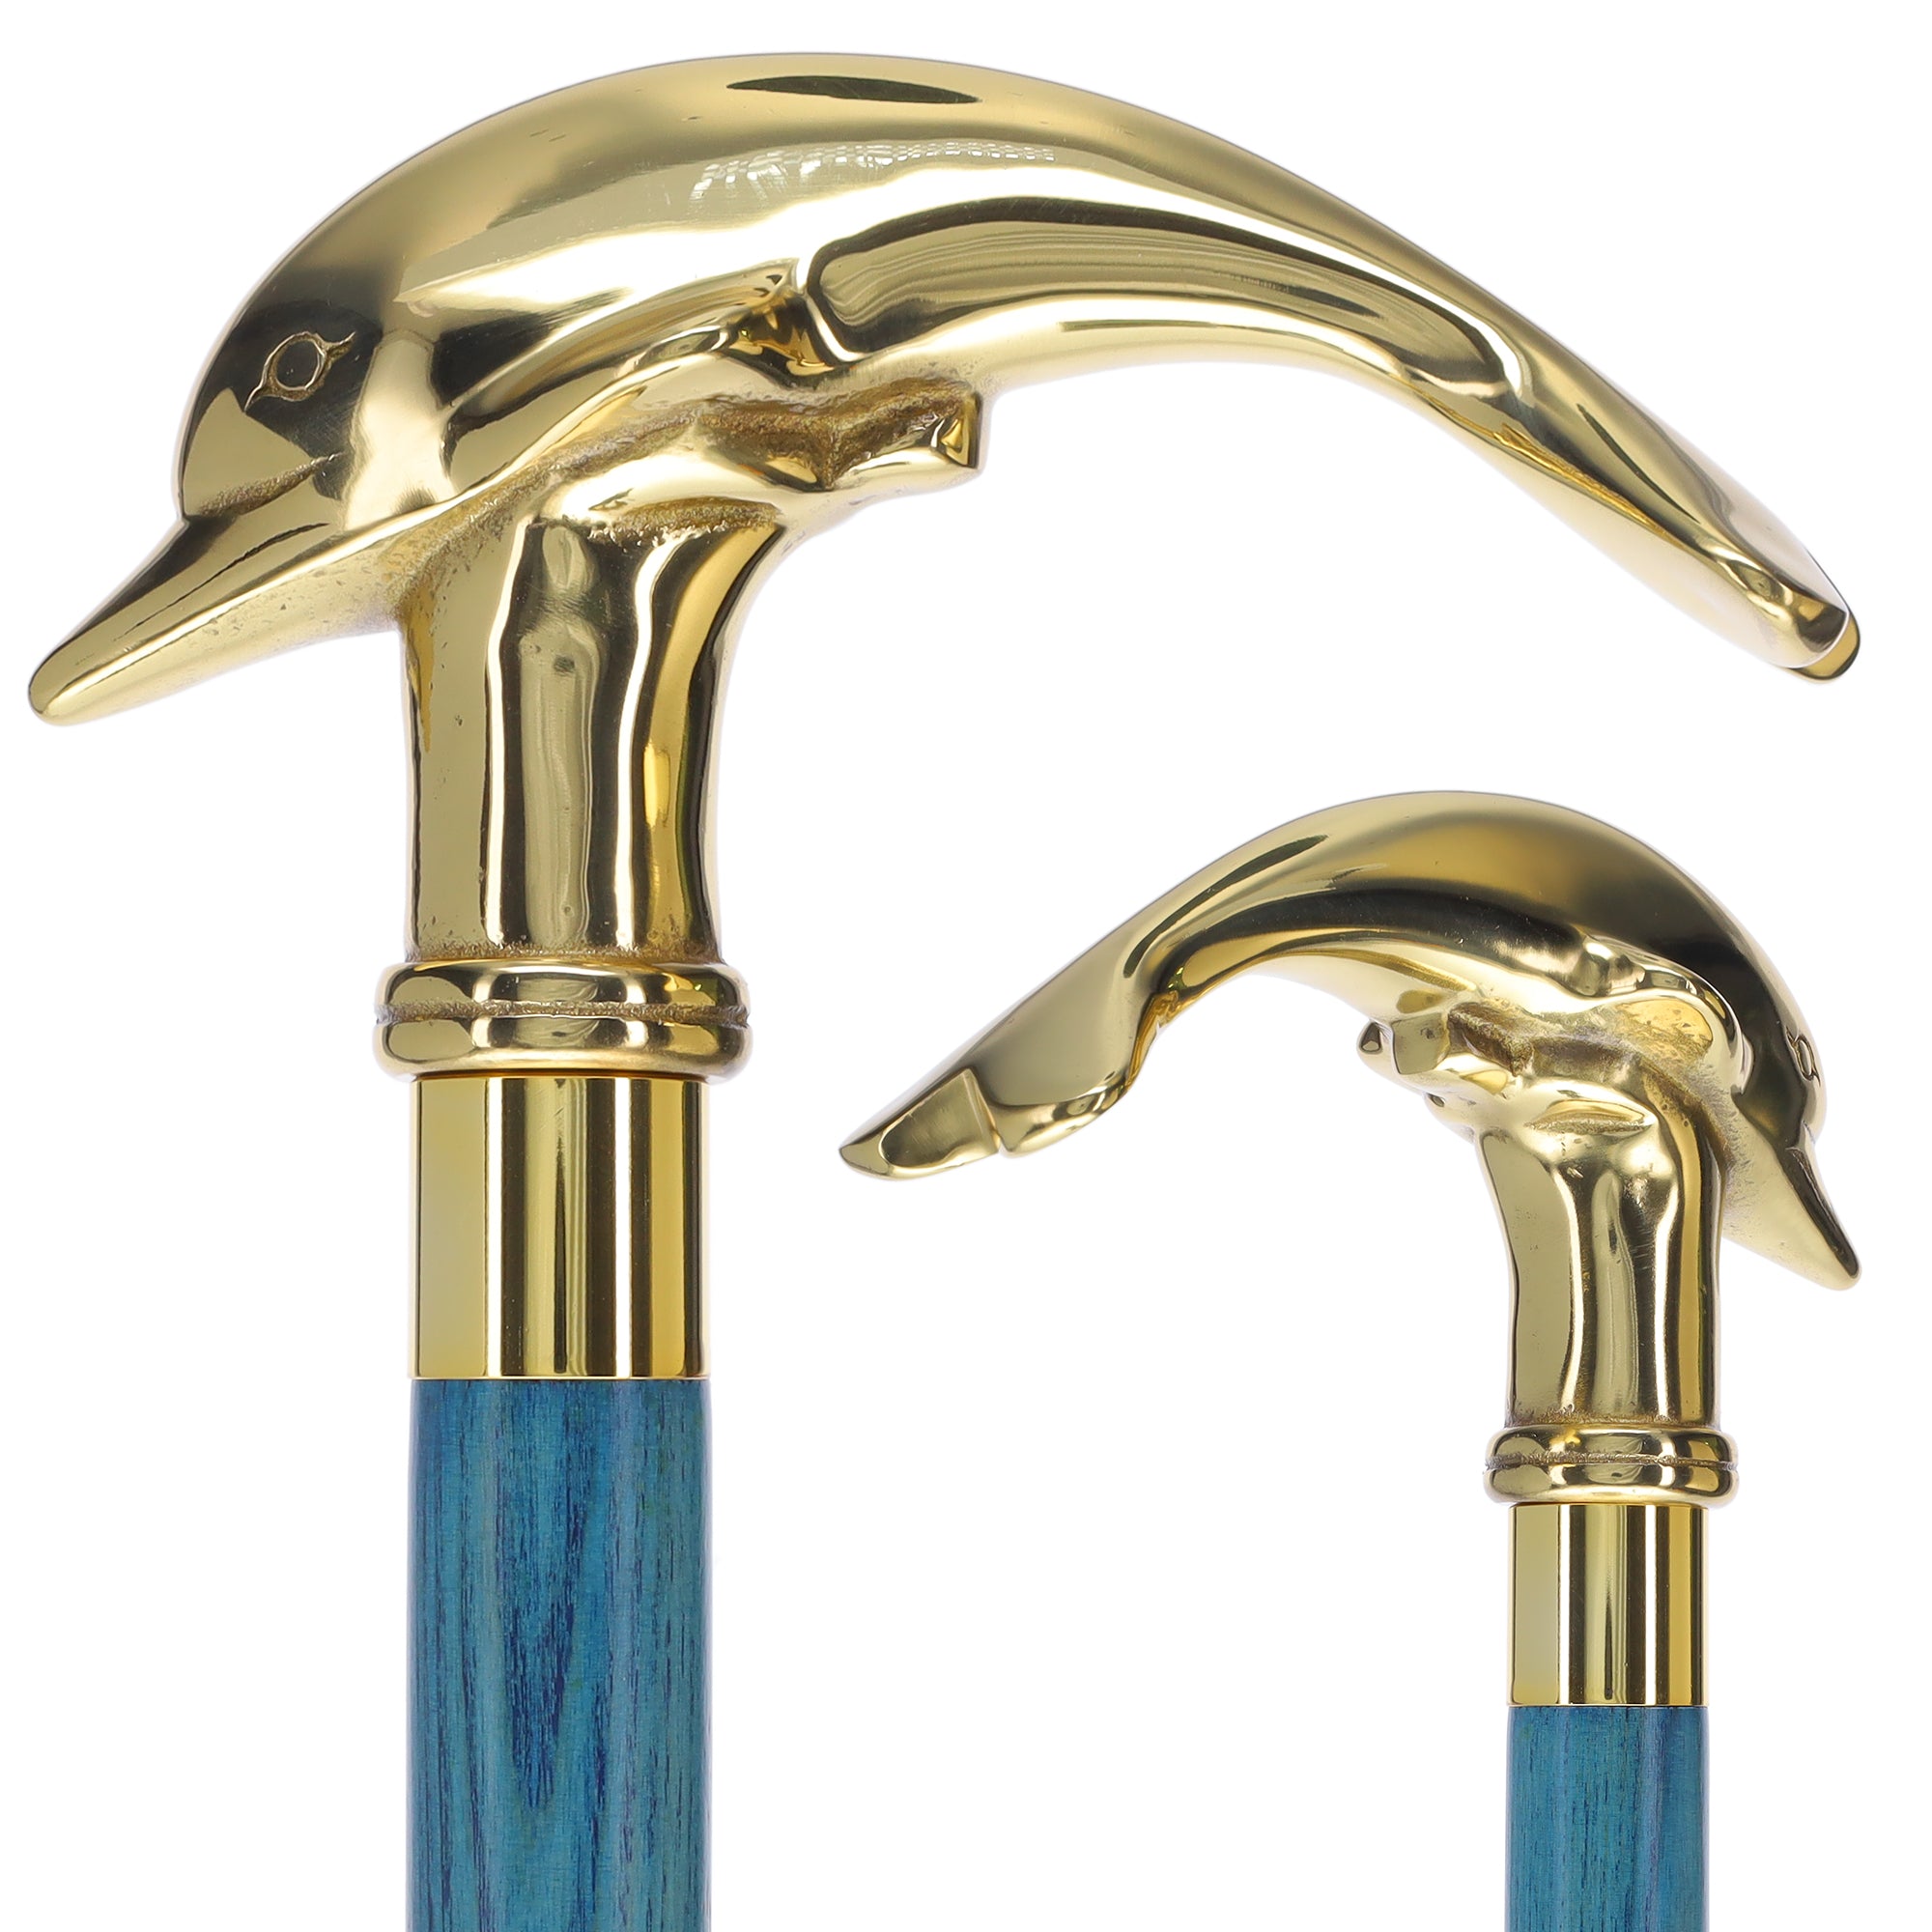 Vista Brass Dolphin Handle Walking Stick in Gold (50407G)